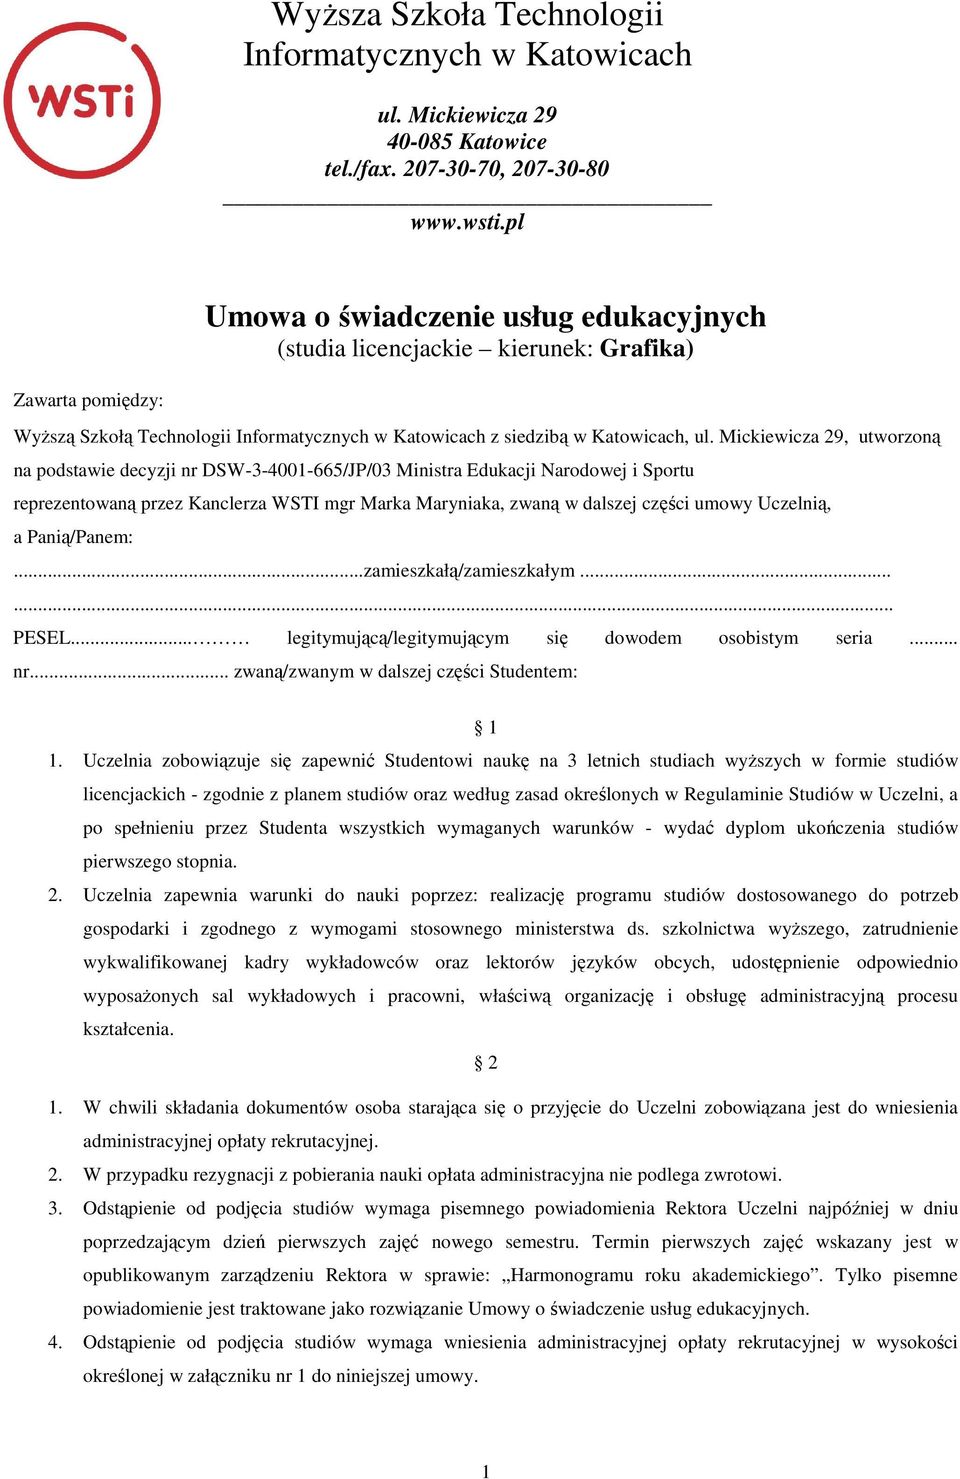 Mickiewicza 29, utworzoną na podstawie decyzji nr DSW-3-4001-665/JP/03 Ministra Edukacji Narodowej i Sportu reprezentowaną przez Kanclerza WSTI mgr Marka Maryniaka, zwaną w dalszej części umowy